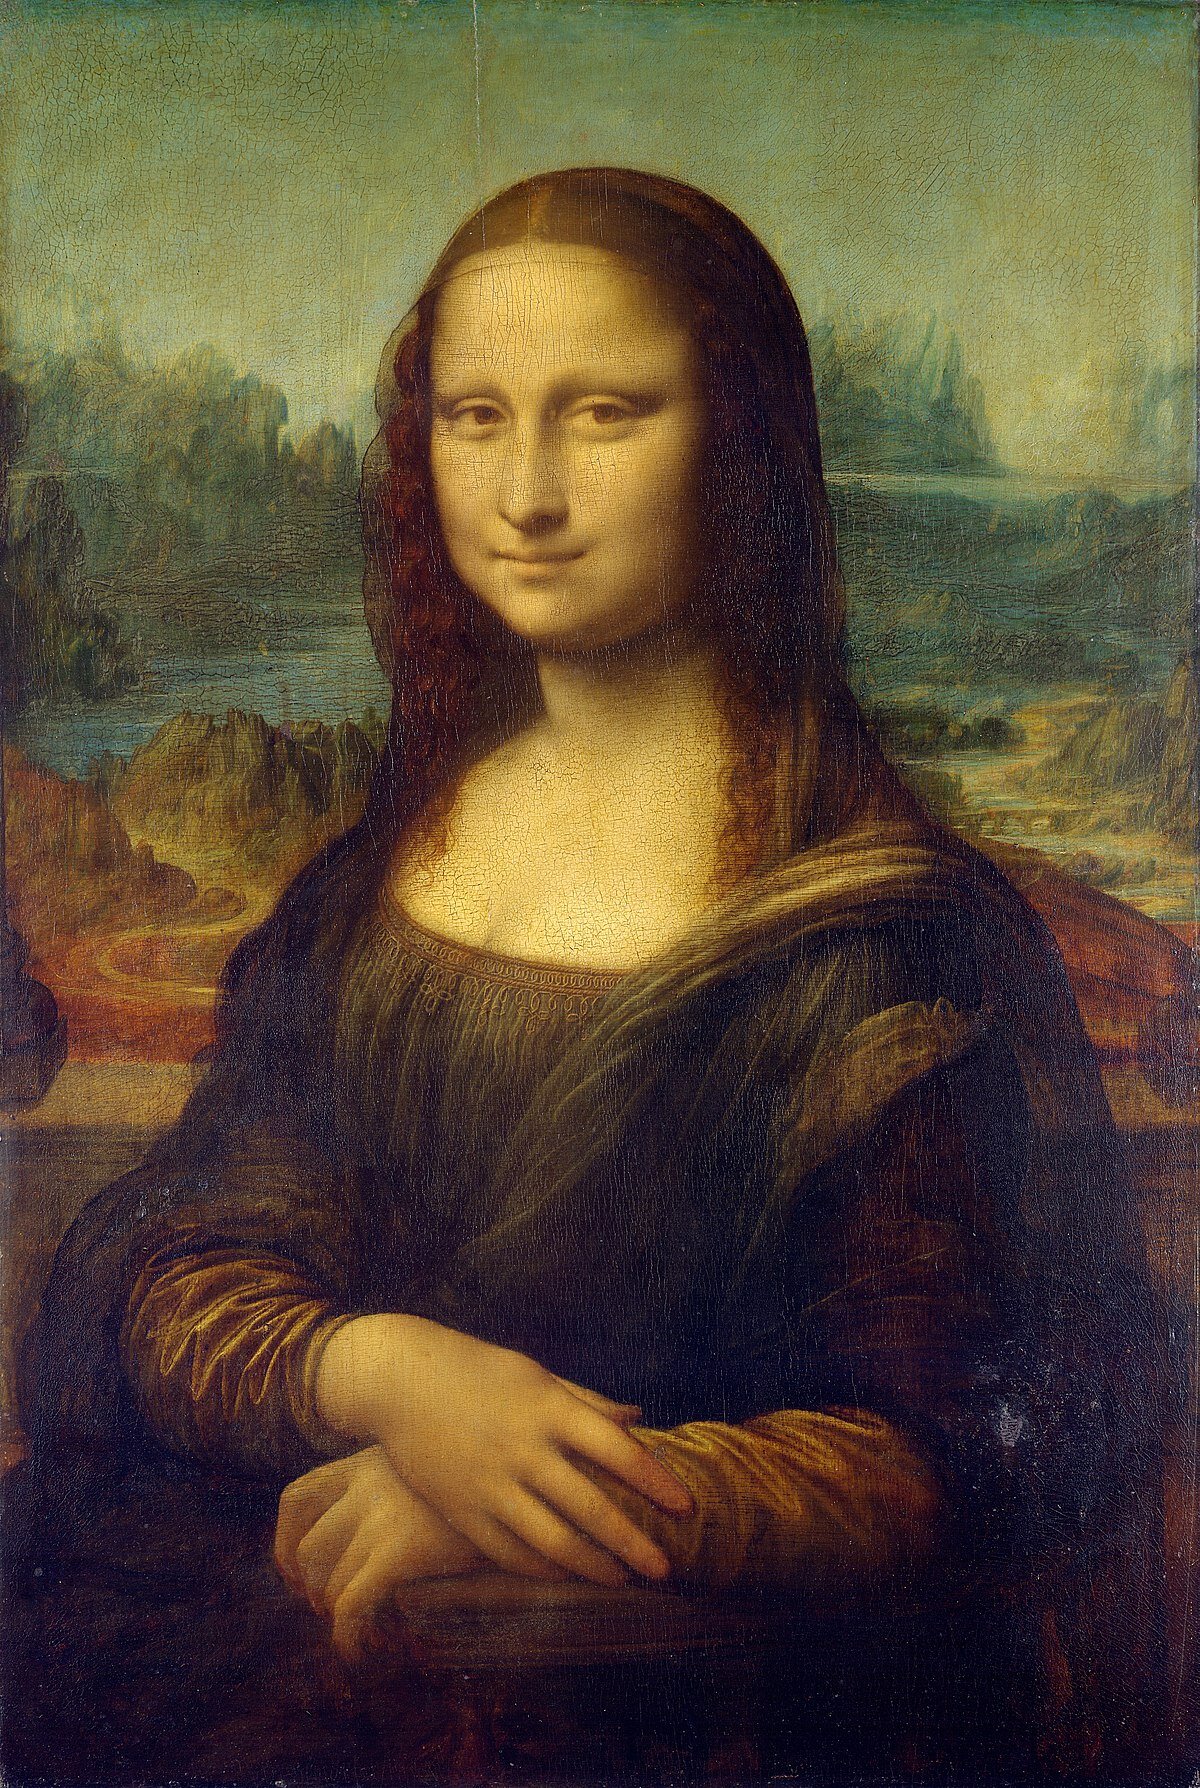 Leonardo da Vinci, Mona Lisa, c. 1503 and after (Copy)